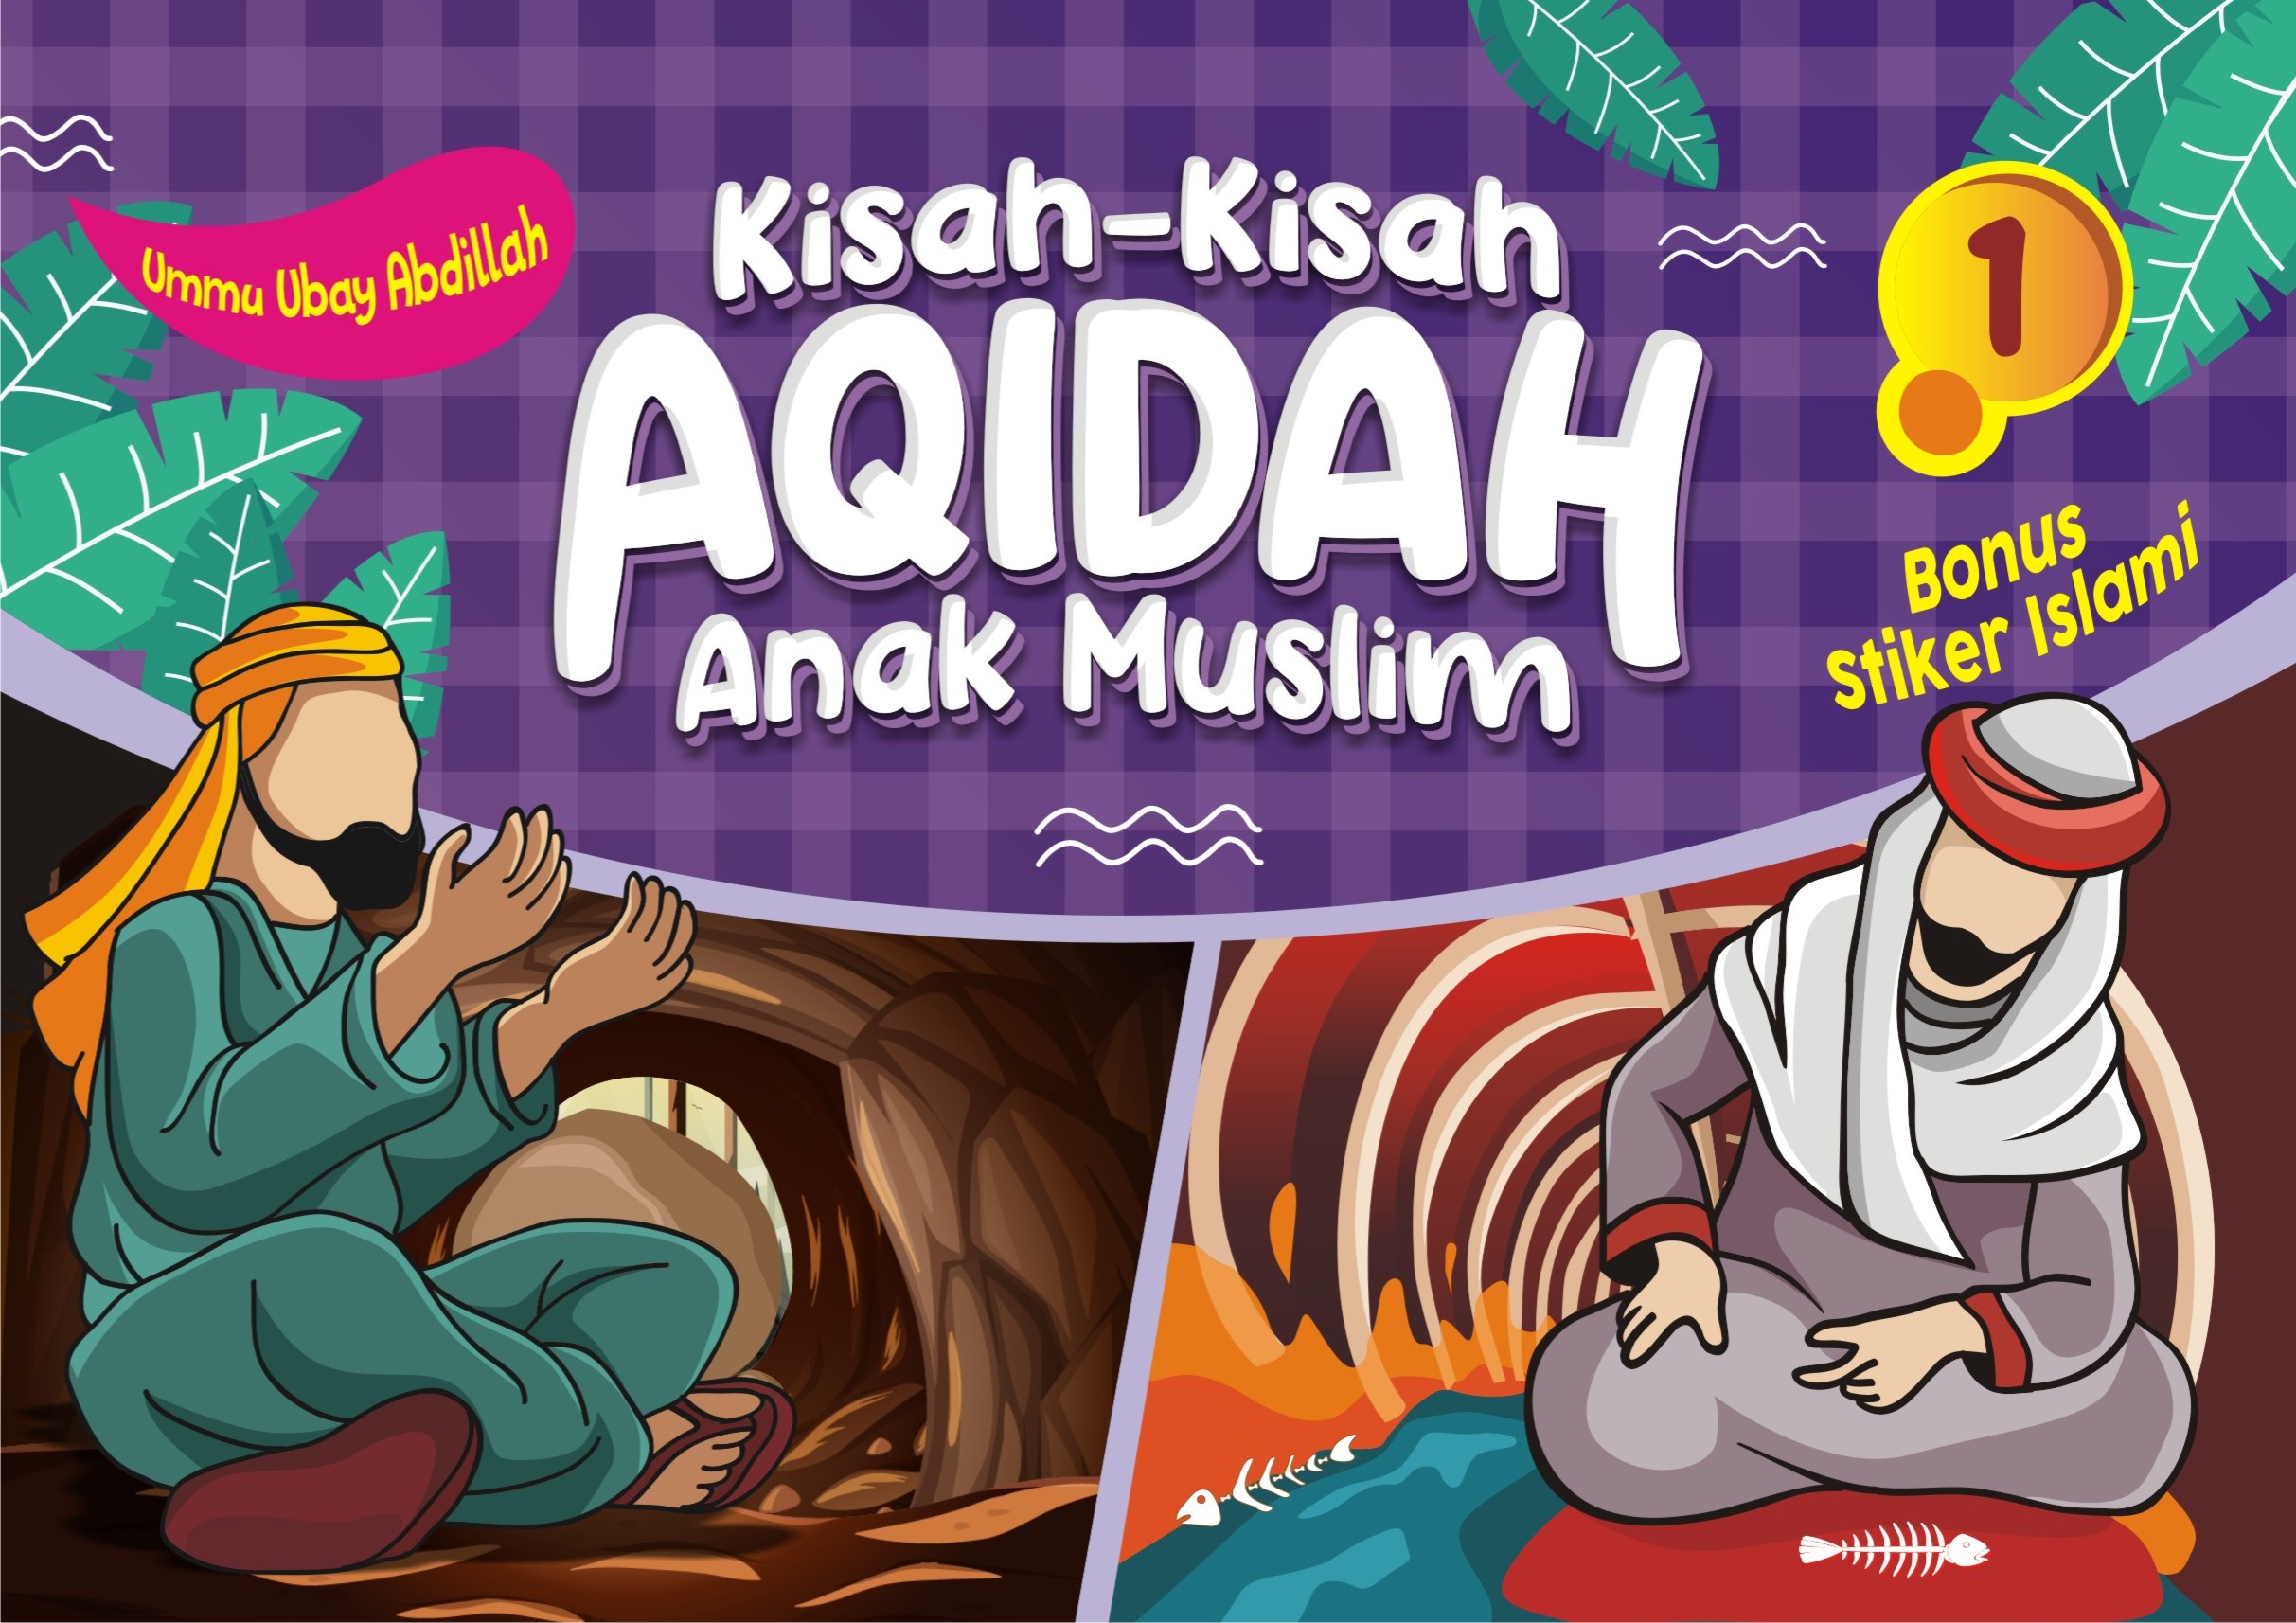 Kisah-kisah Aqidah Anak Muslim (1)